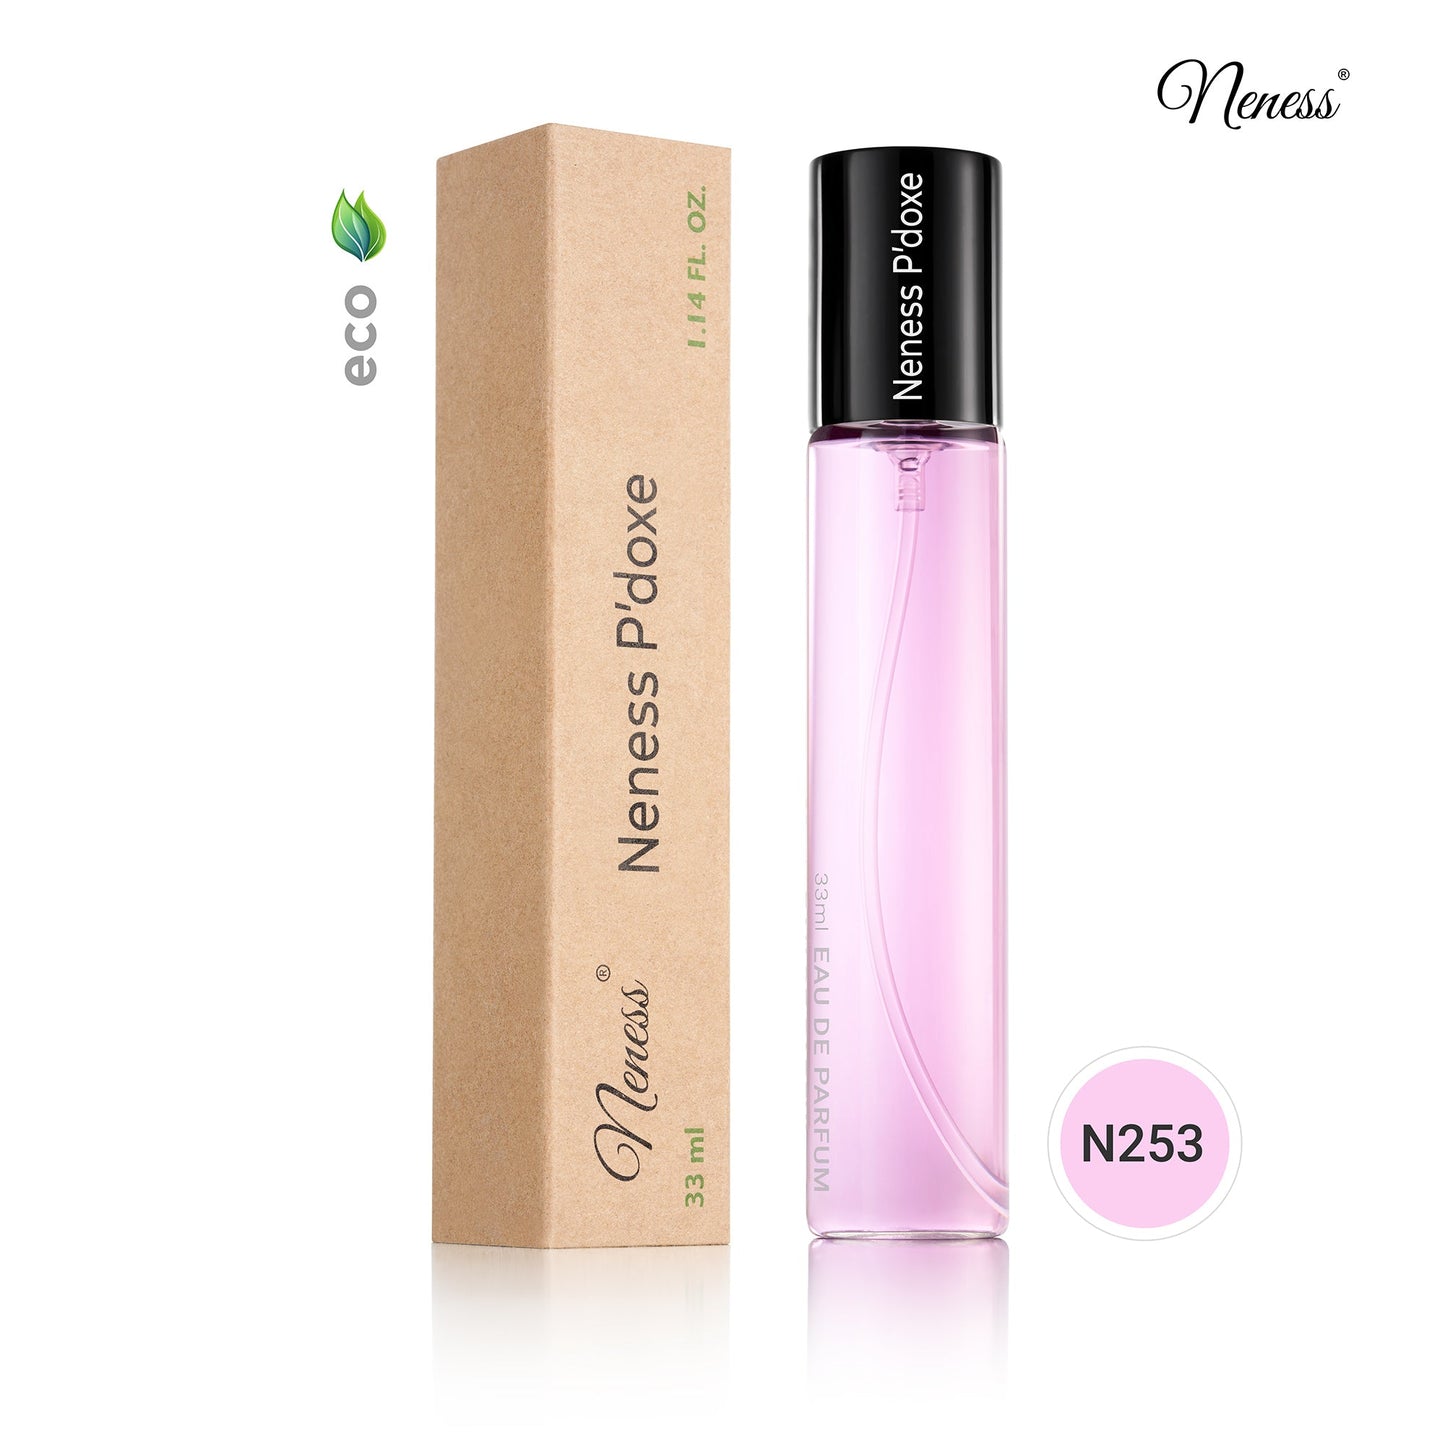 N253. Neness P'Doxe - 33 ml - Parfum Pour Femme